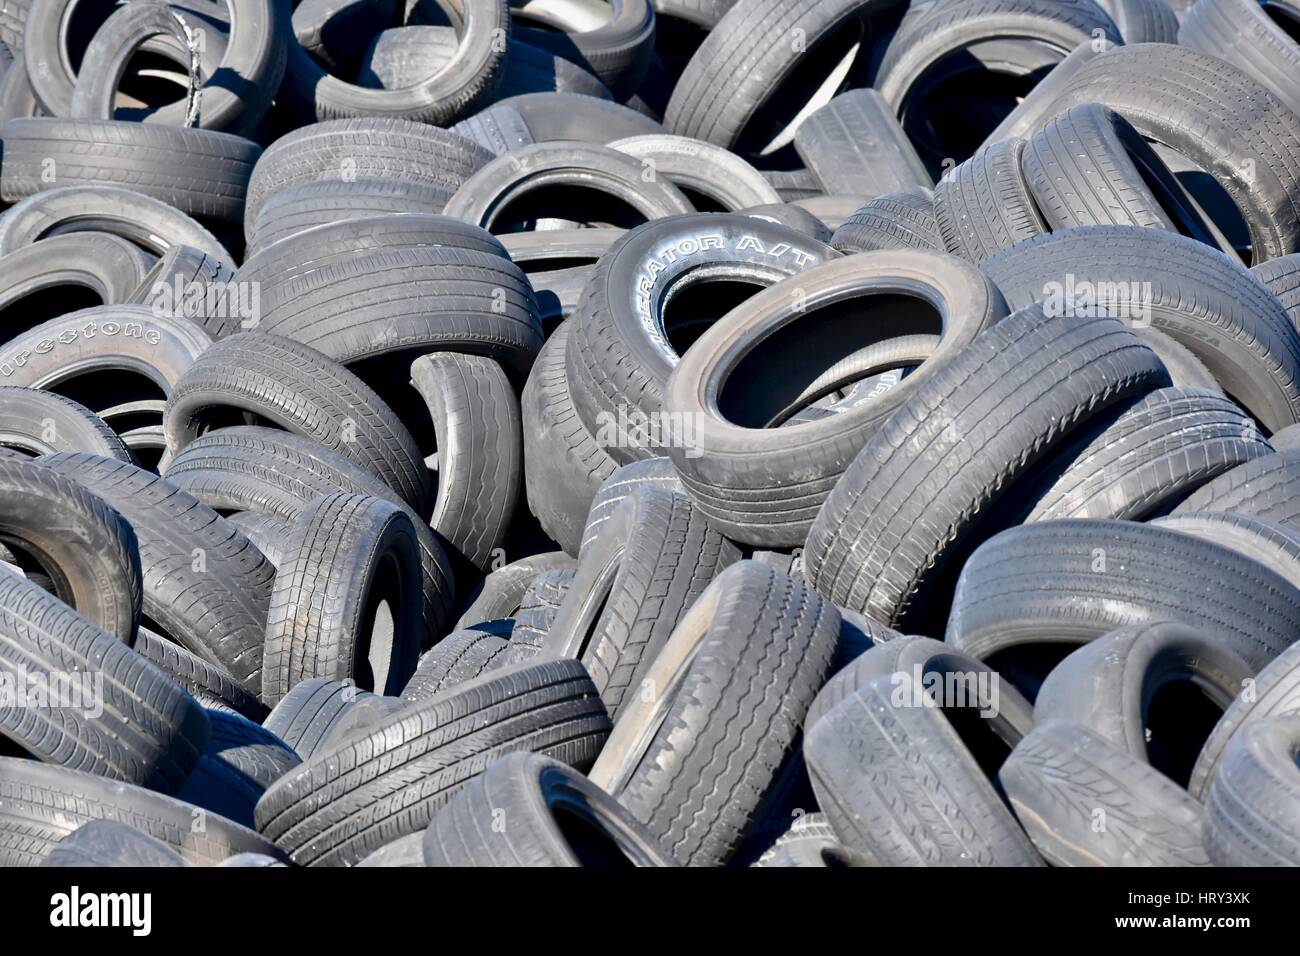 Cimetière des pneus usagés Banque D'Images